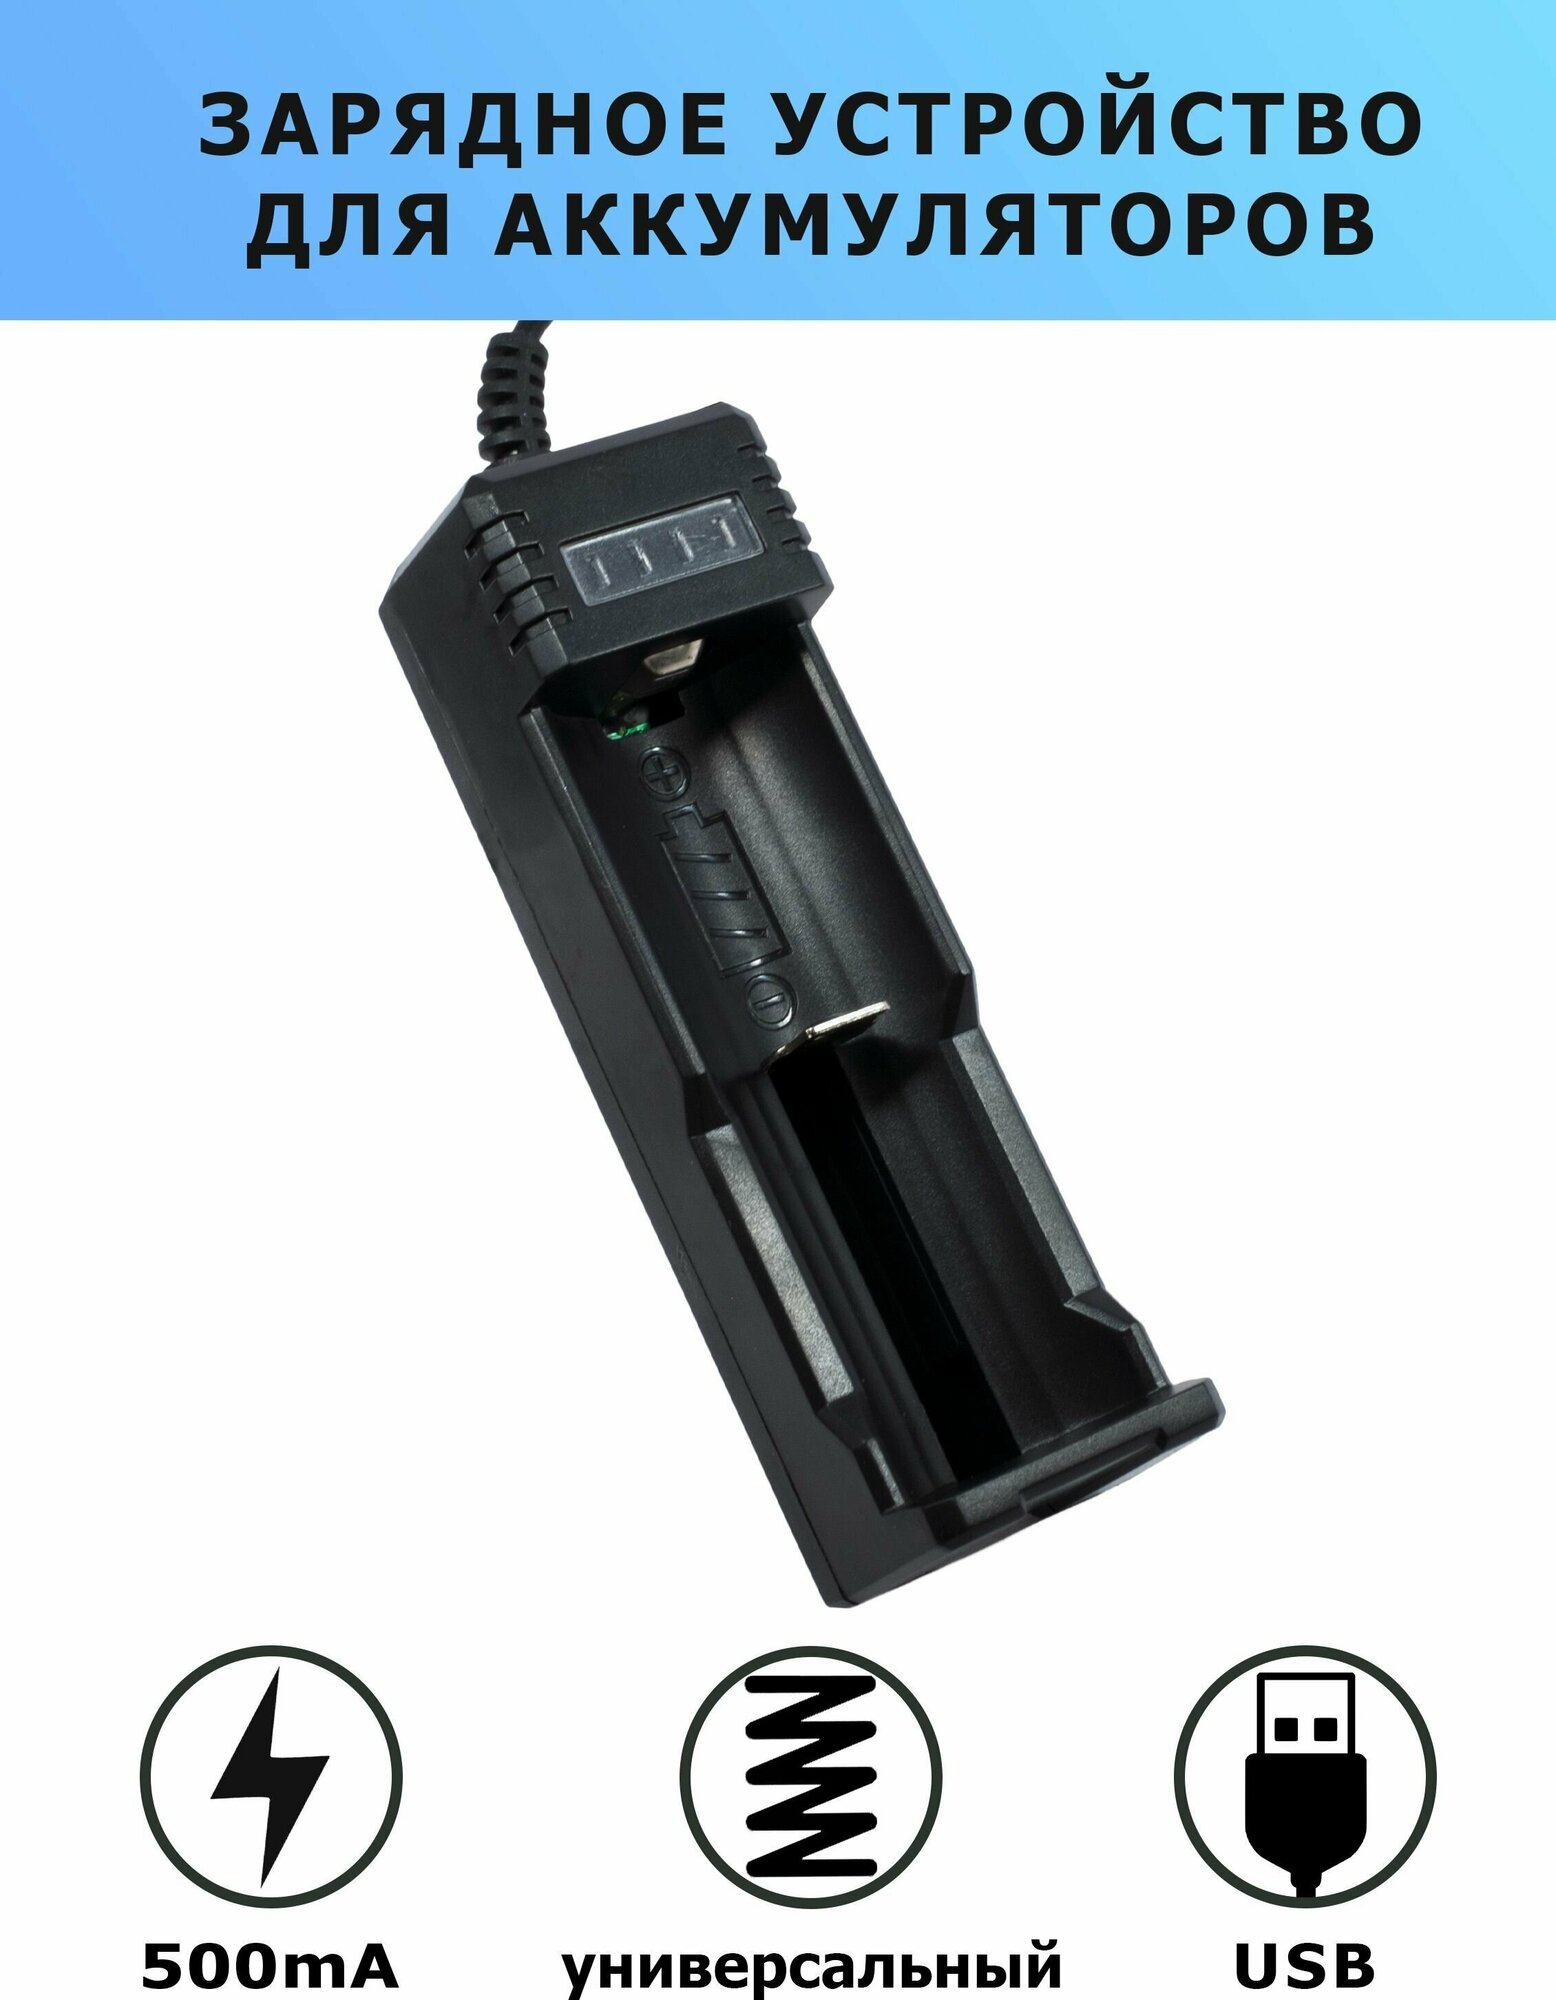 Зарядное устройство для аккумуляторов USB универсальное 4.2V YH-006